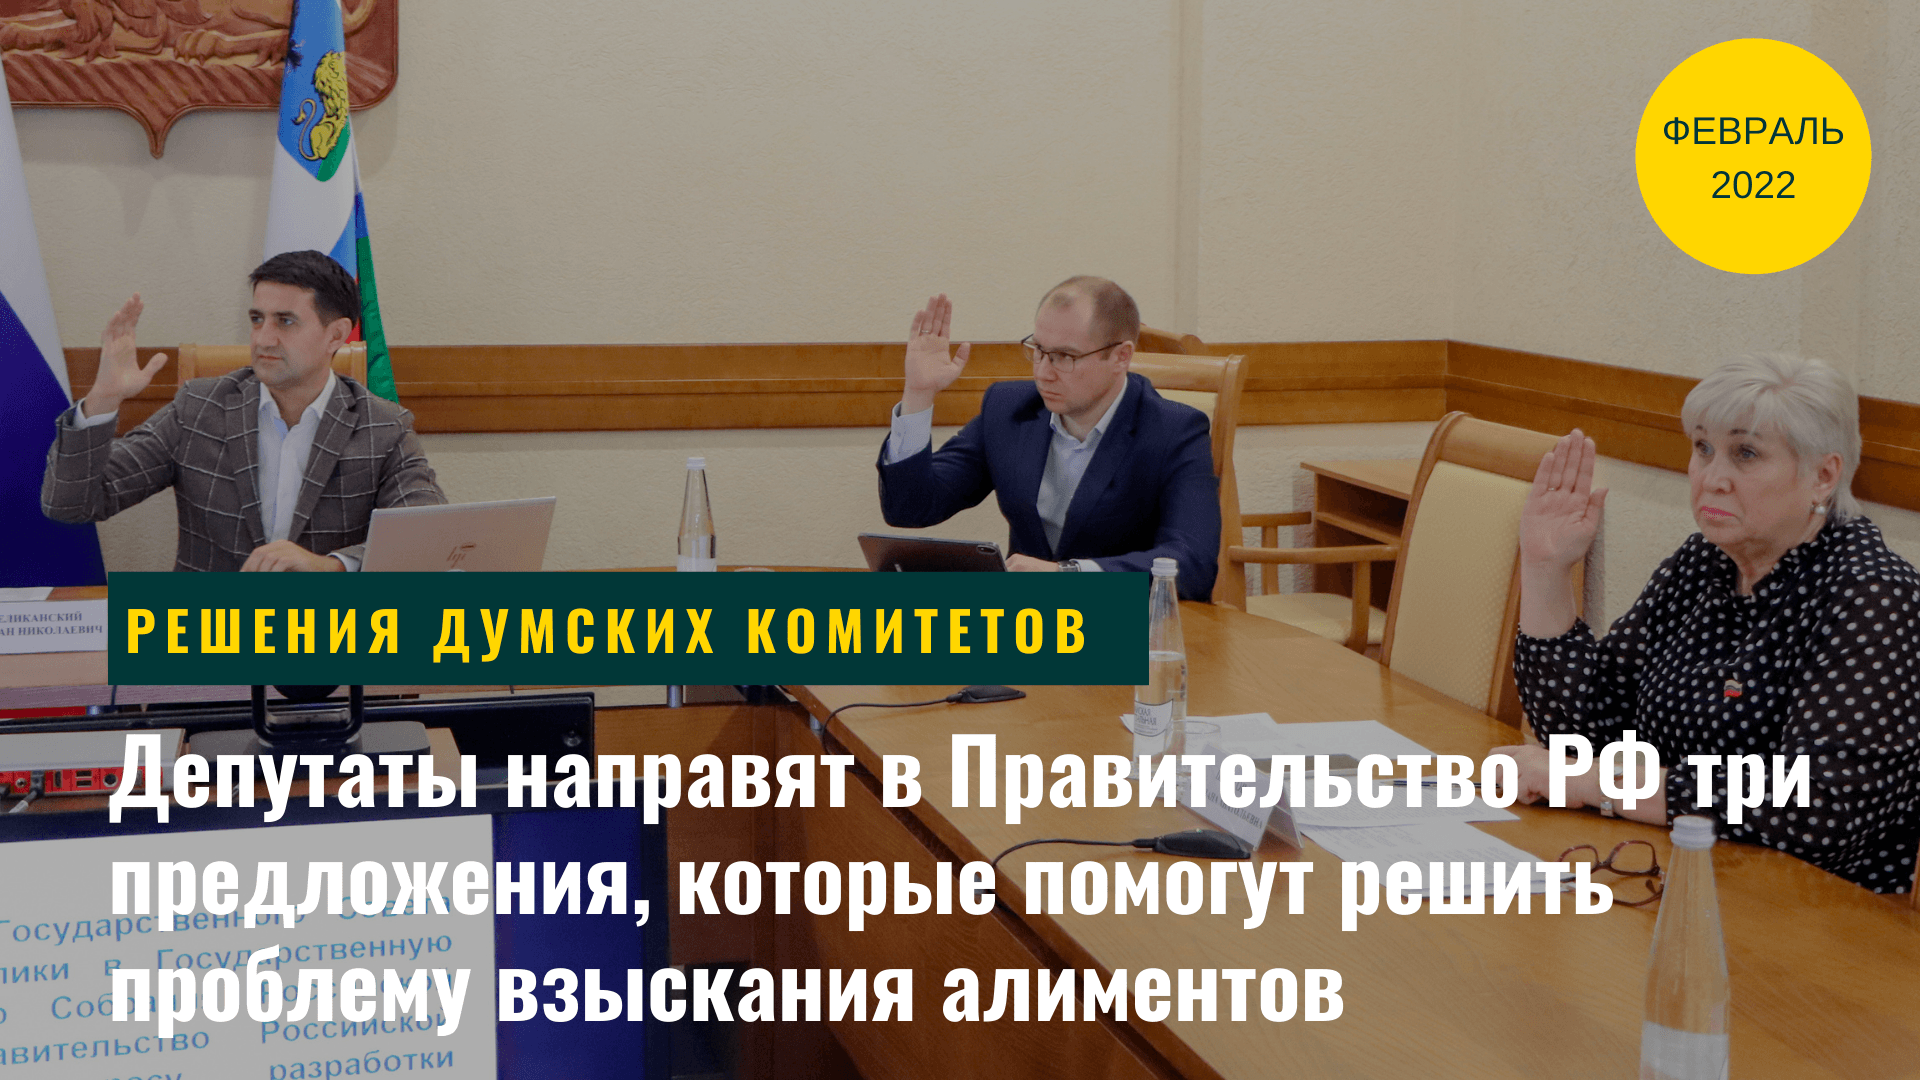 Обращение областной Думы в Правительство РФ и другие решения комитета по социальной политике